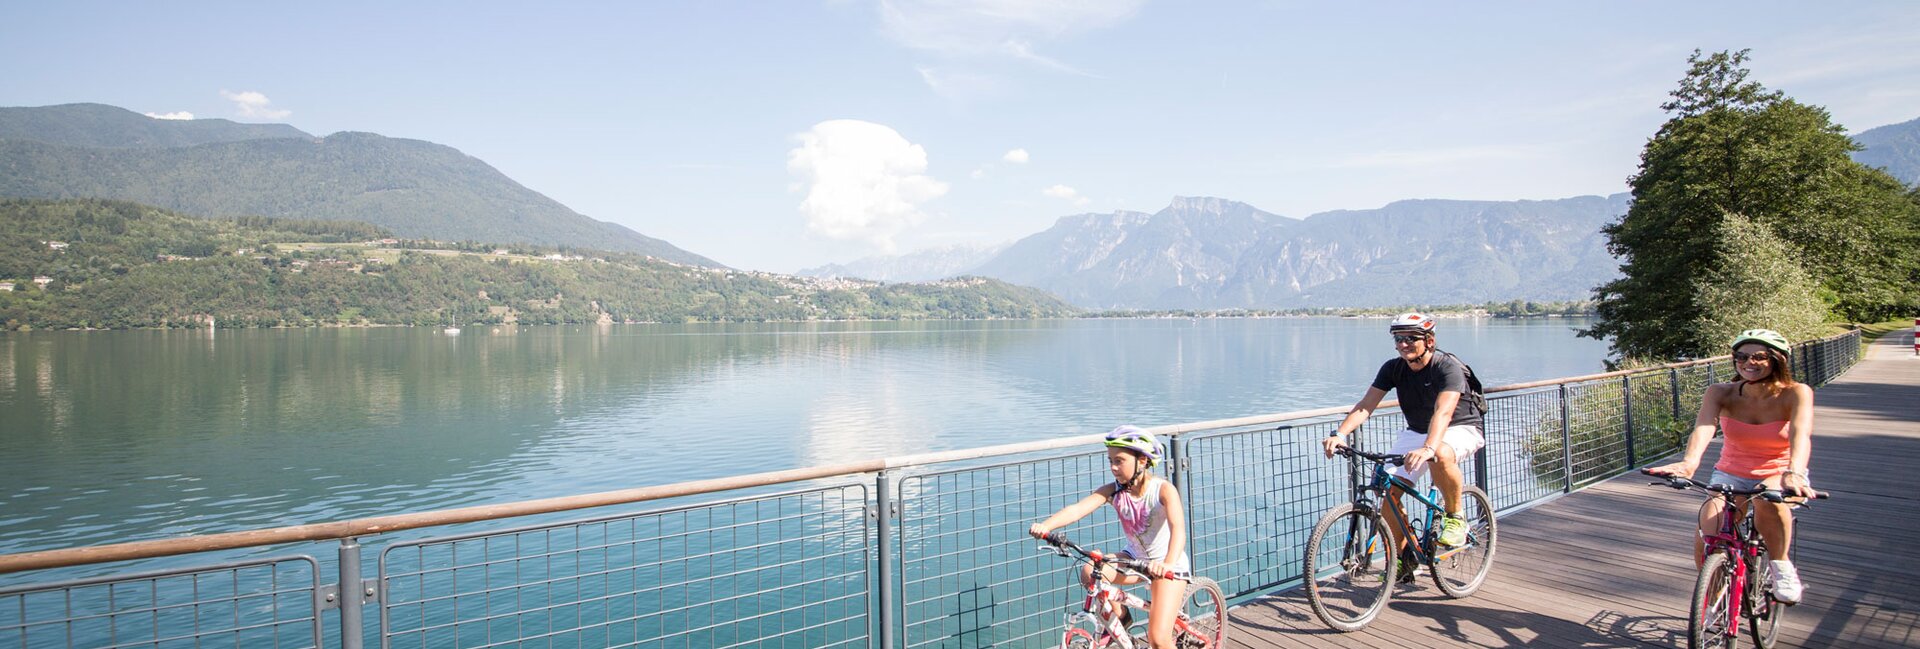 Jezioro Caldonazzo, rodzinne wakacje pod znakiem sportu i relaksu